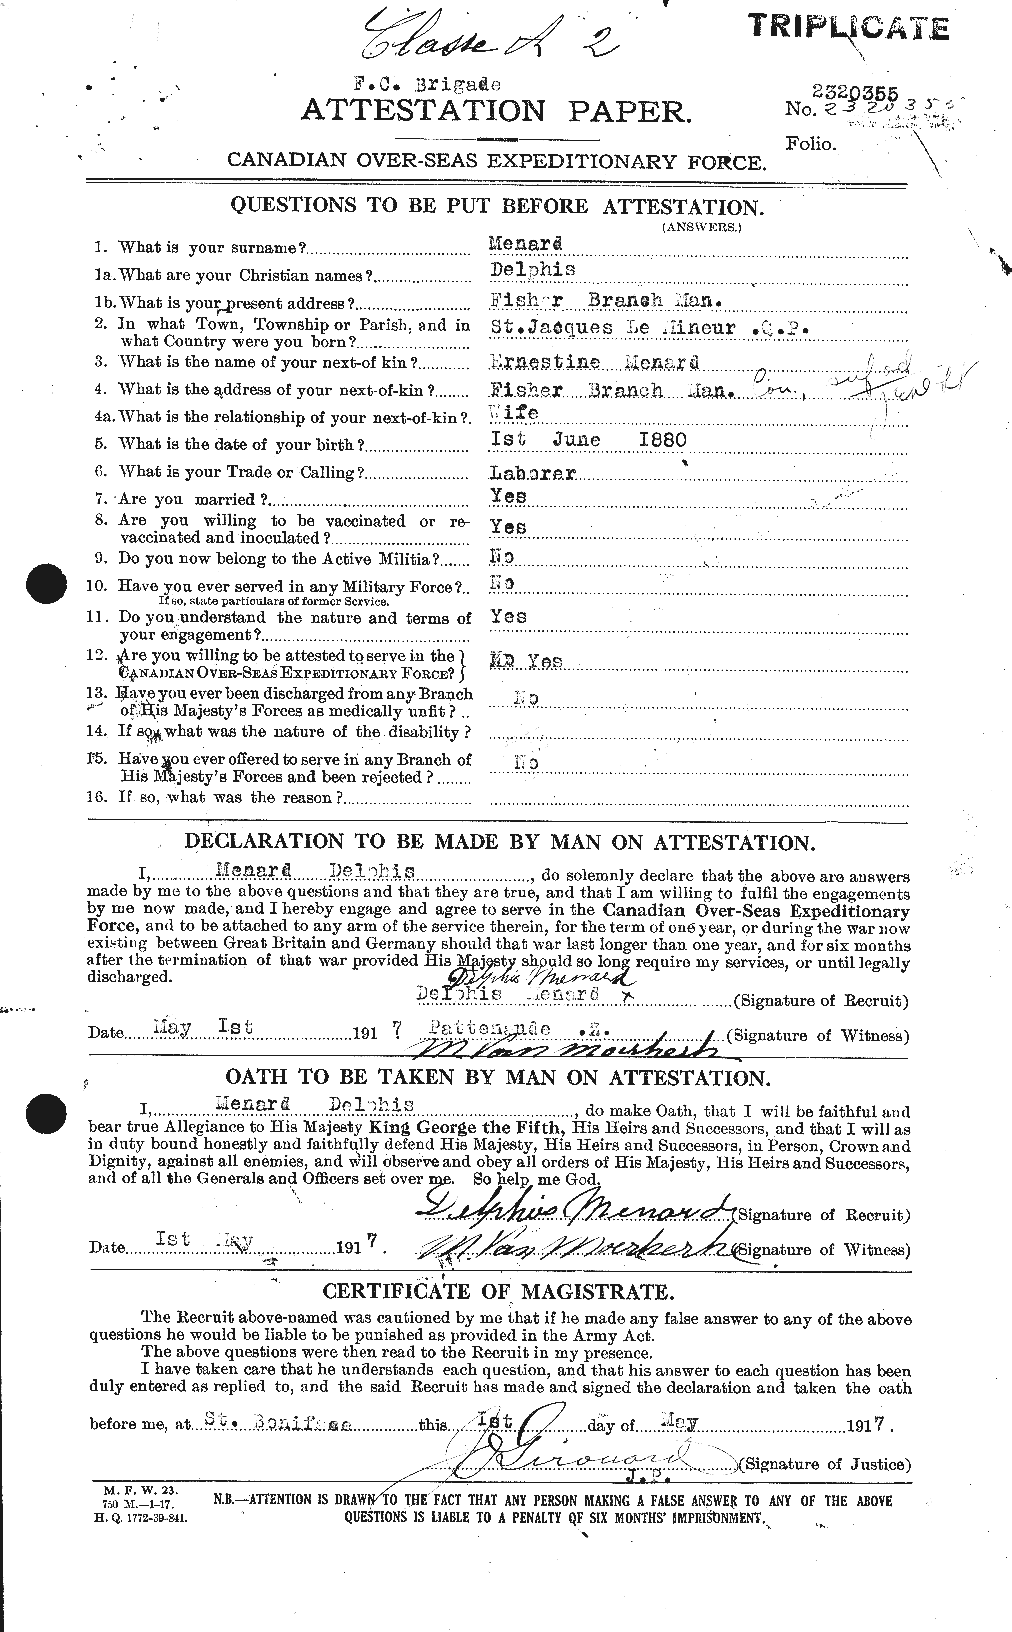 Dossiers du Personnel de la Première Guerre mondiale - CEC 491496a